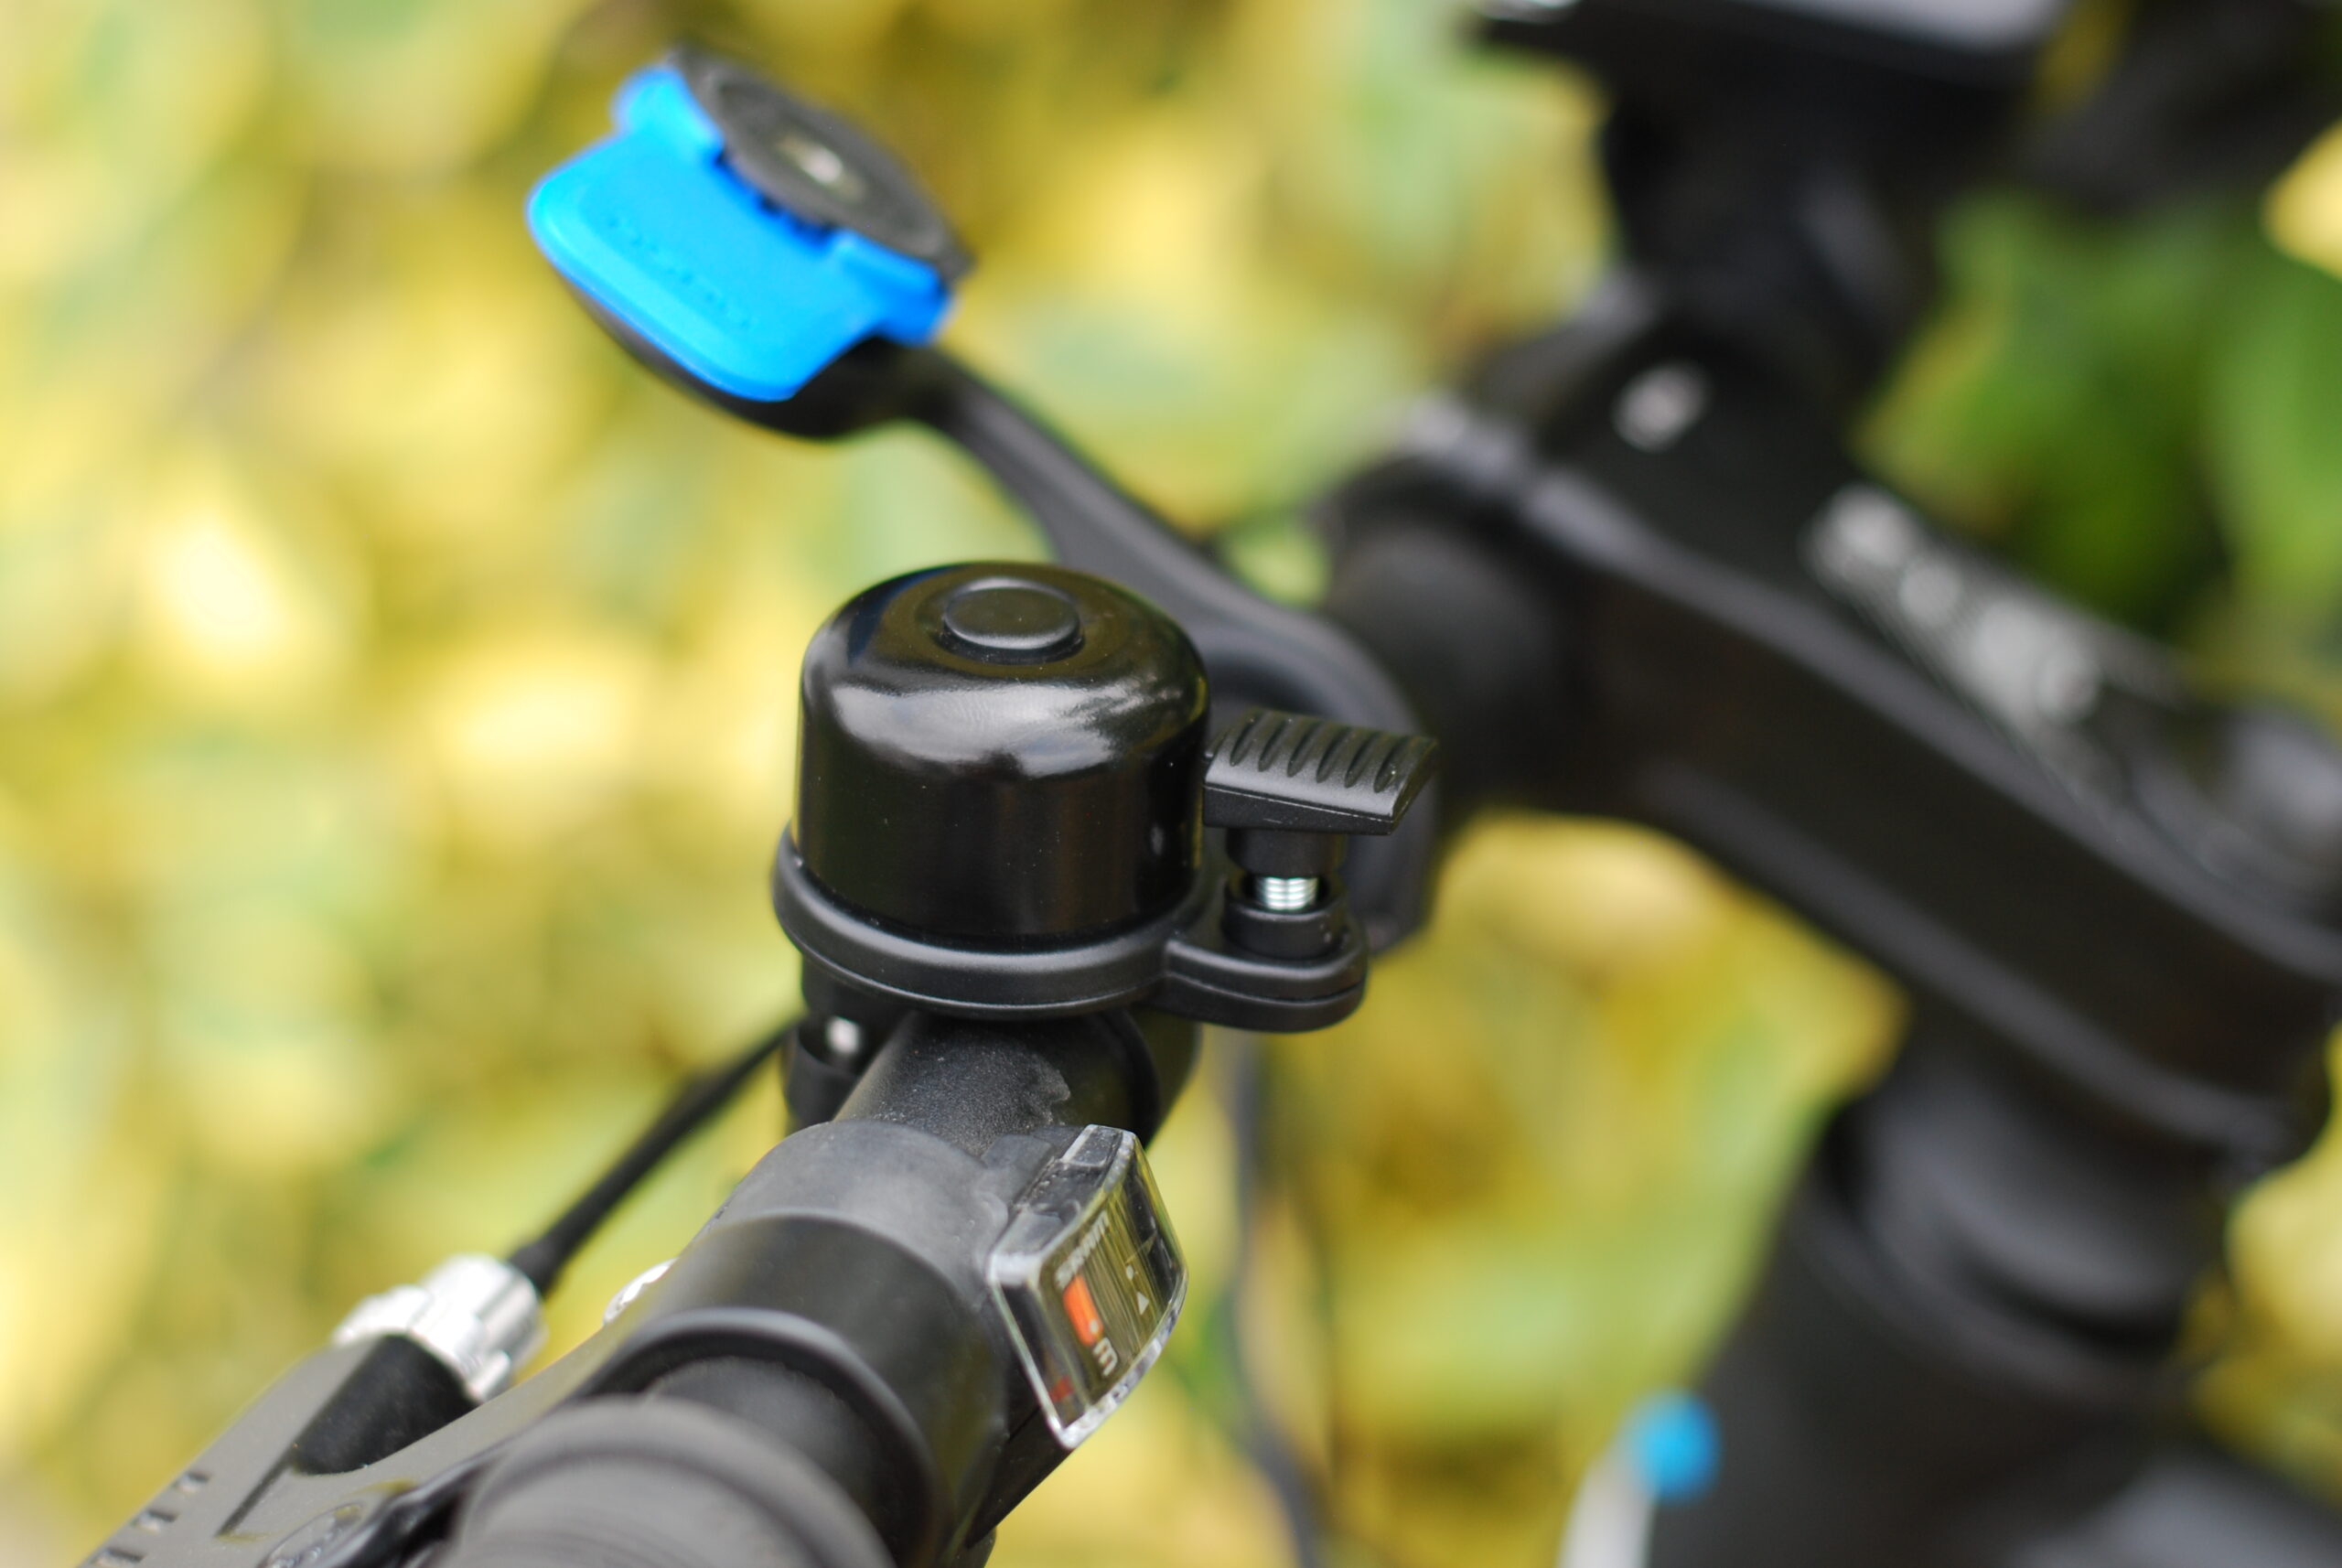 Comment cacher un AirTag sur votre vélo - Belgium iPhone